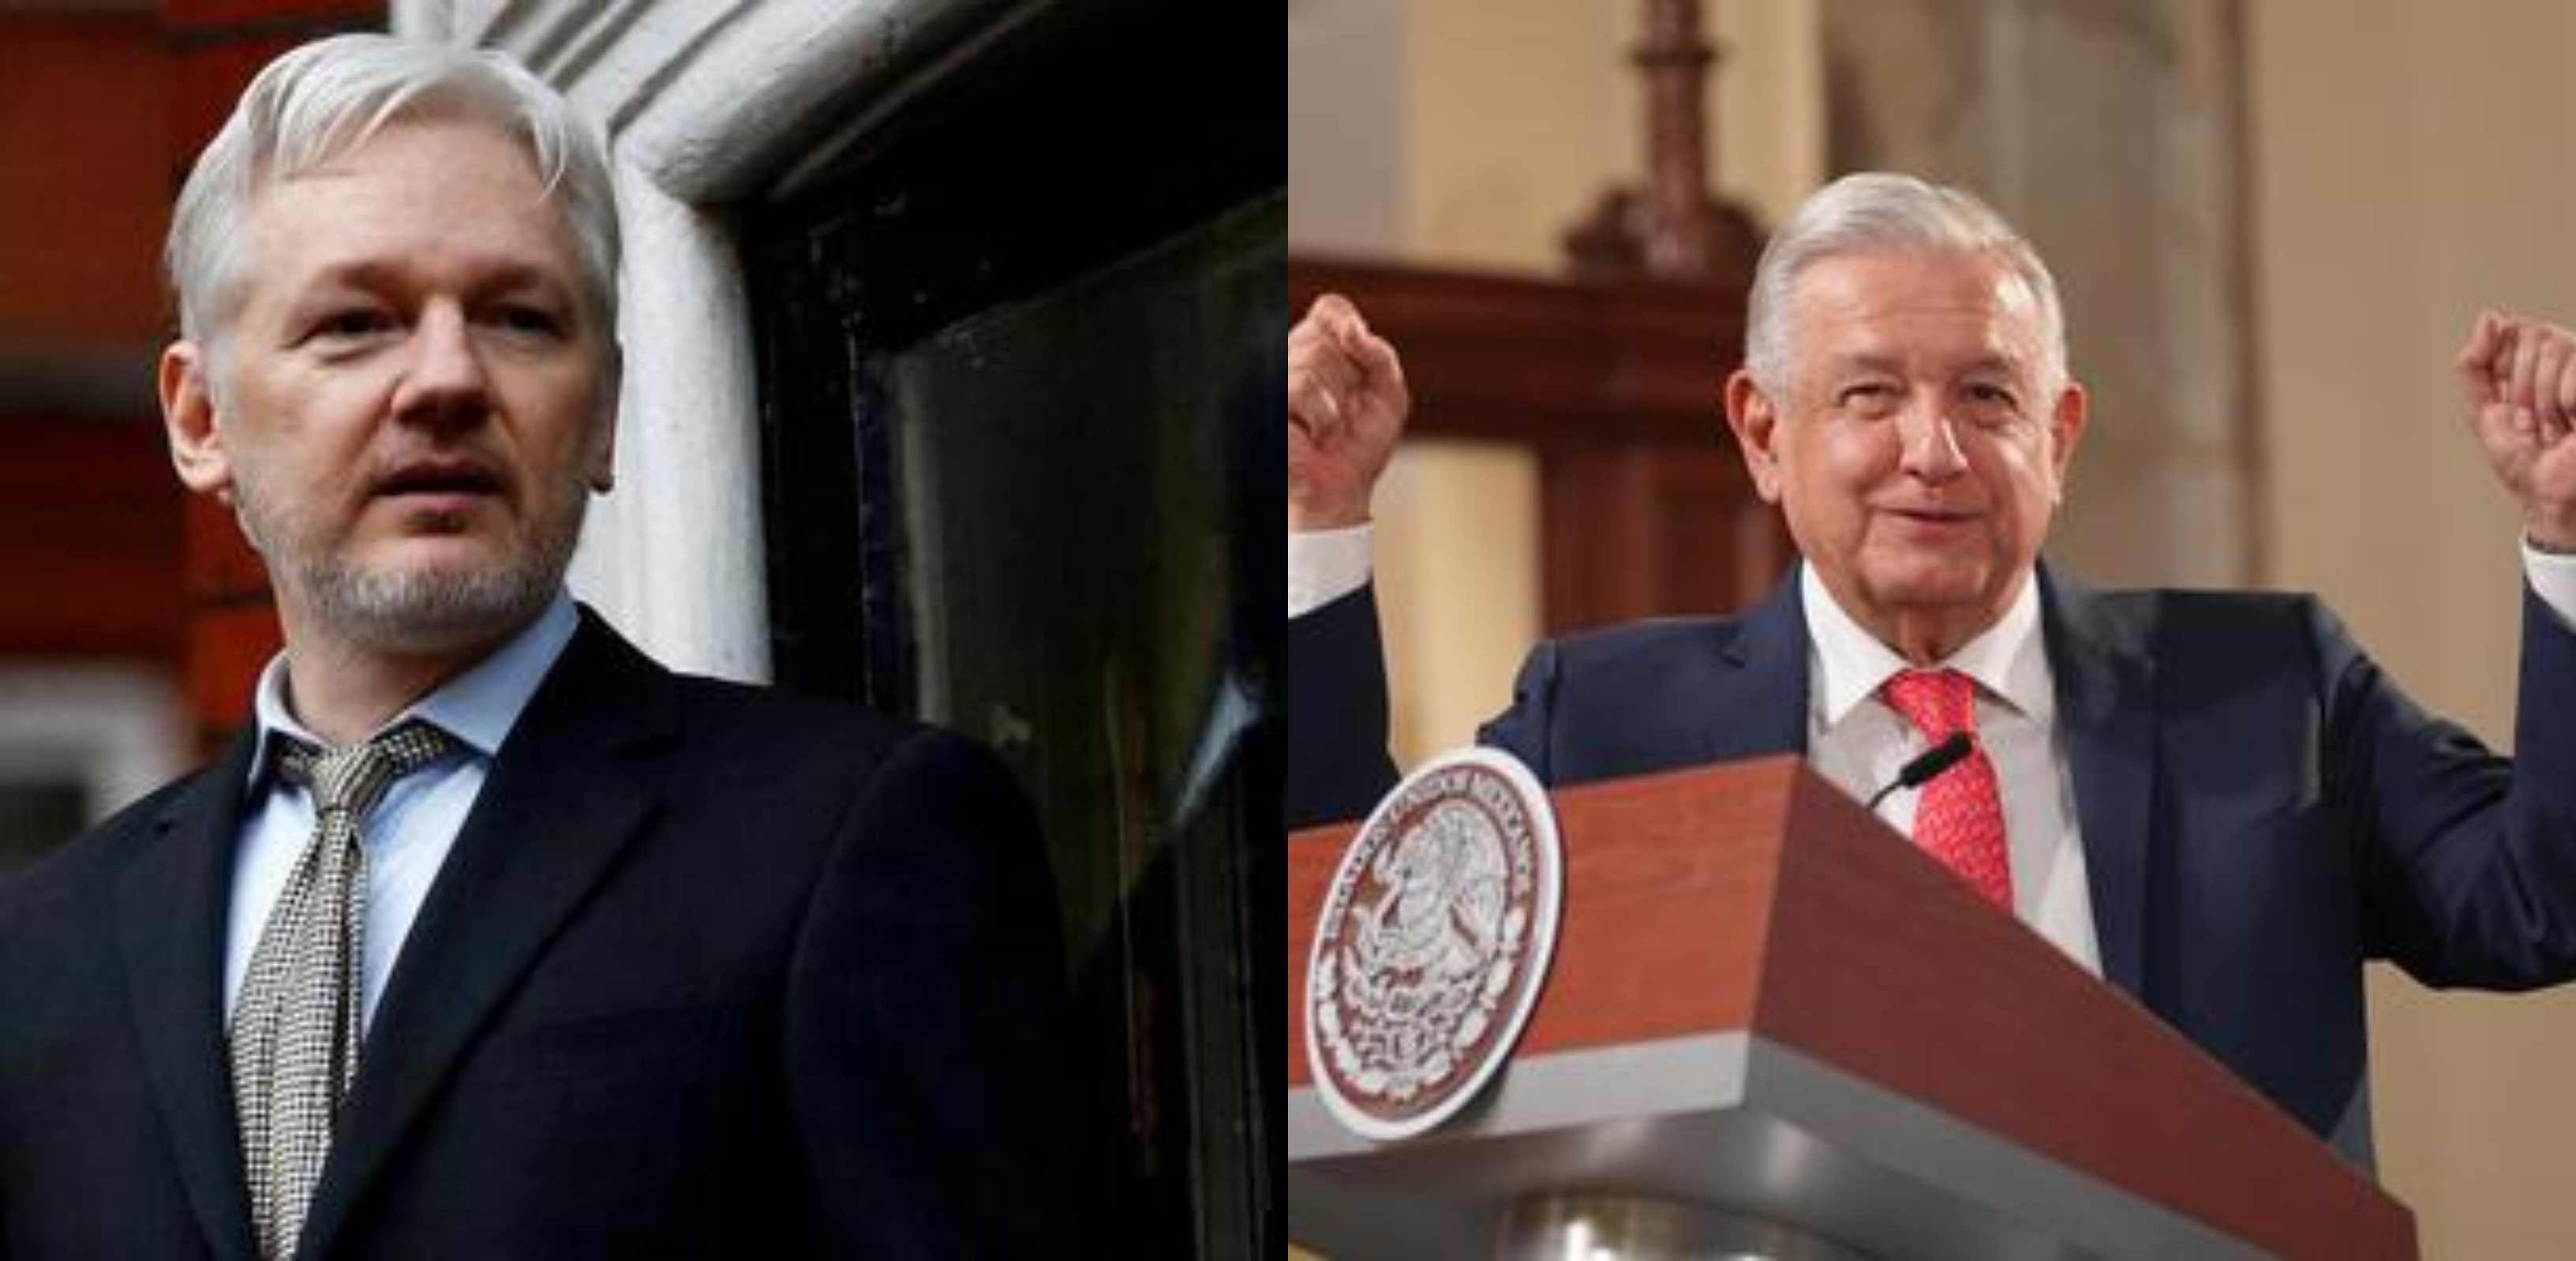 El presidente de México ofreció asilo político al periodista australiano buscado por el gobierno de Estados Unidos (Fotos: Reuters / lopezobrador.org)